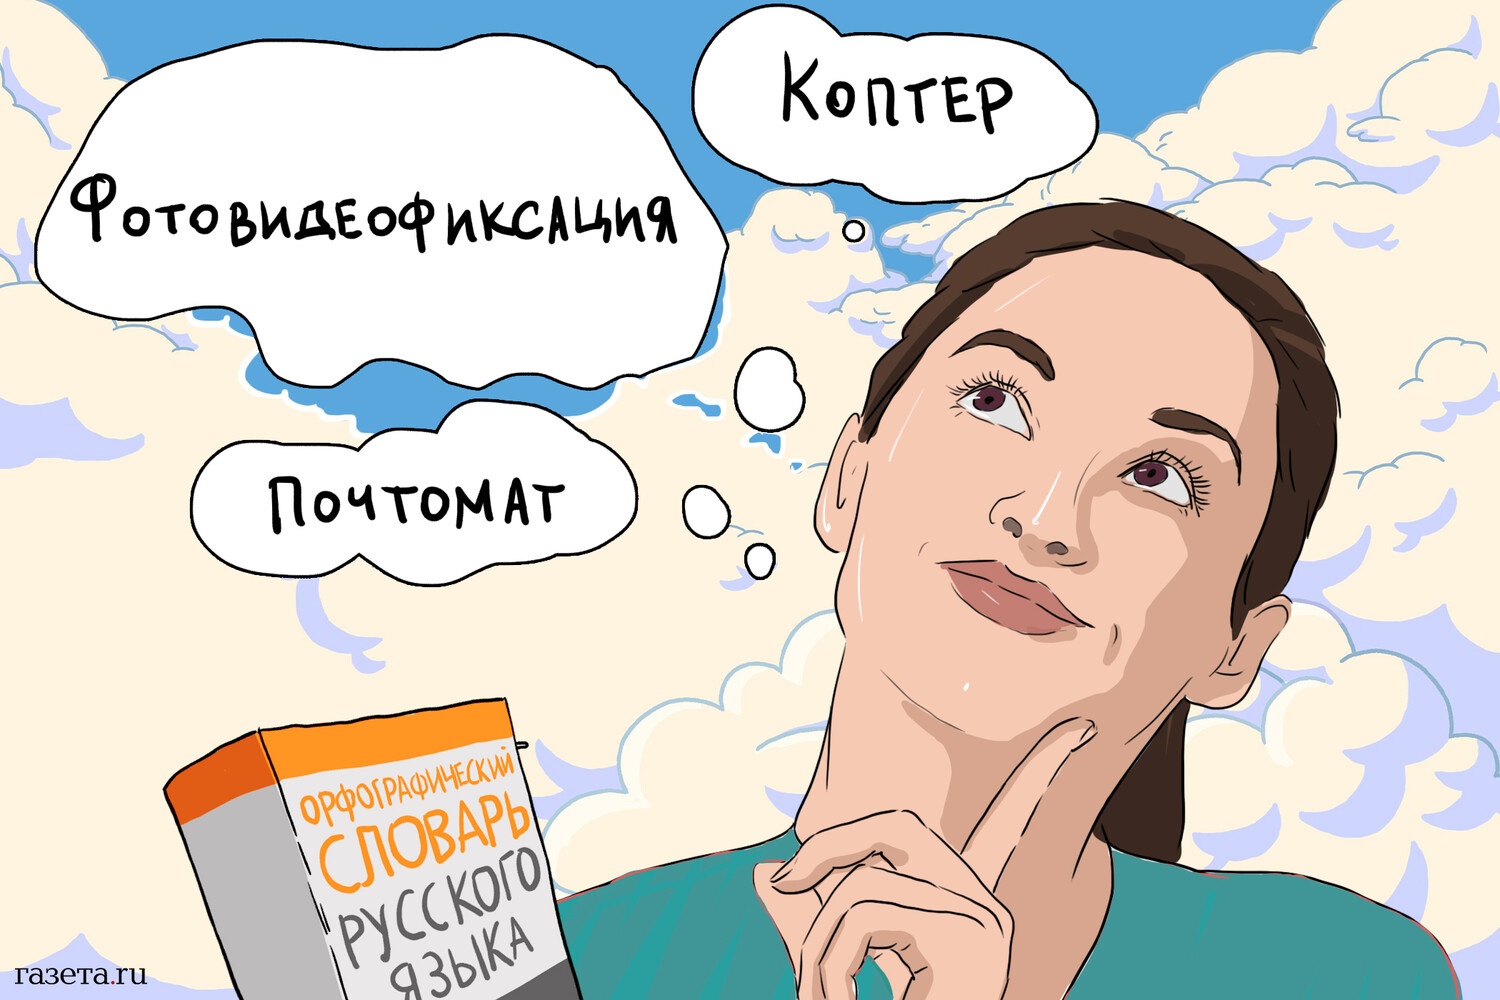 В орфографическом словаре русского языка появились три новых слова